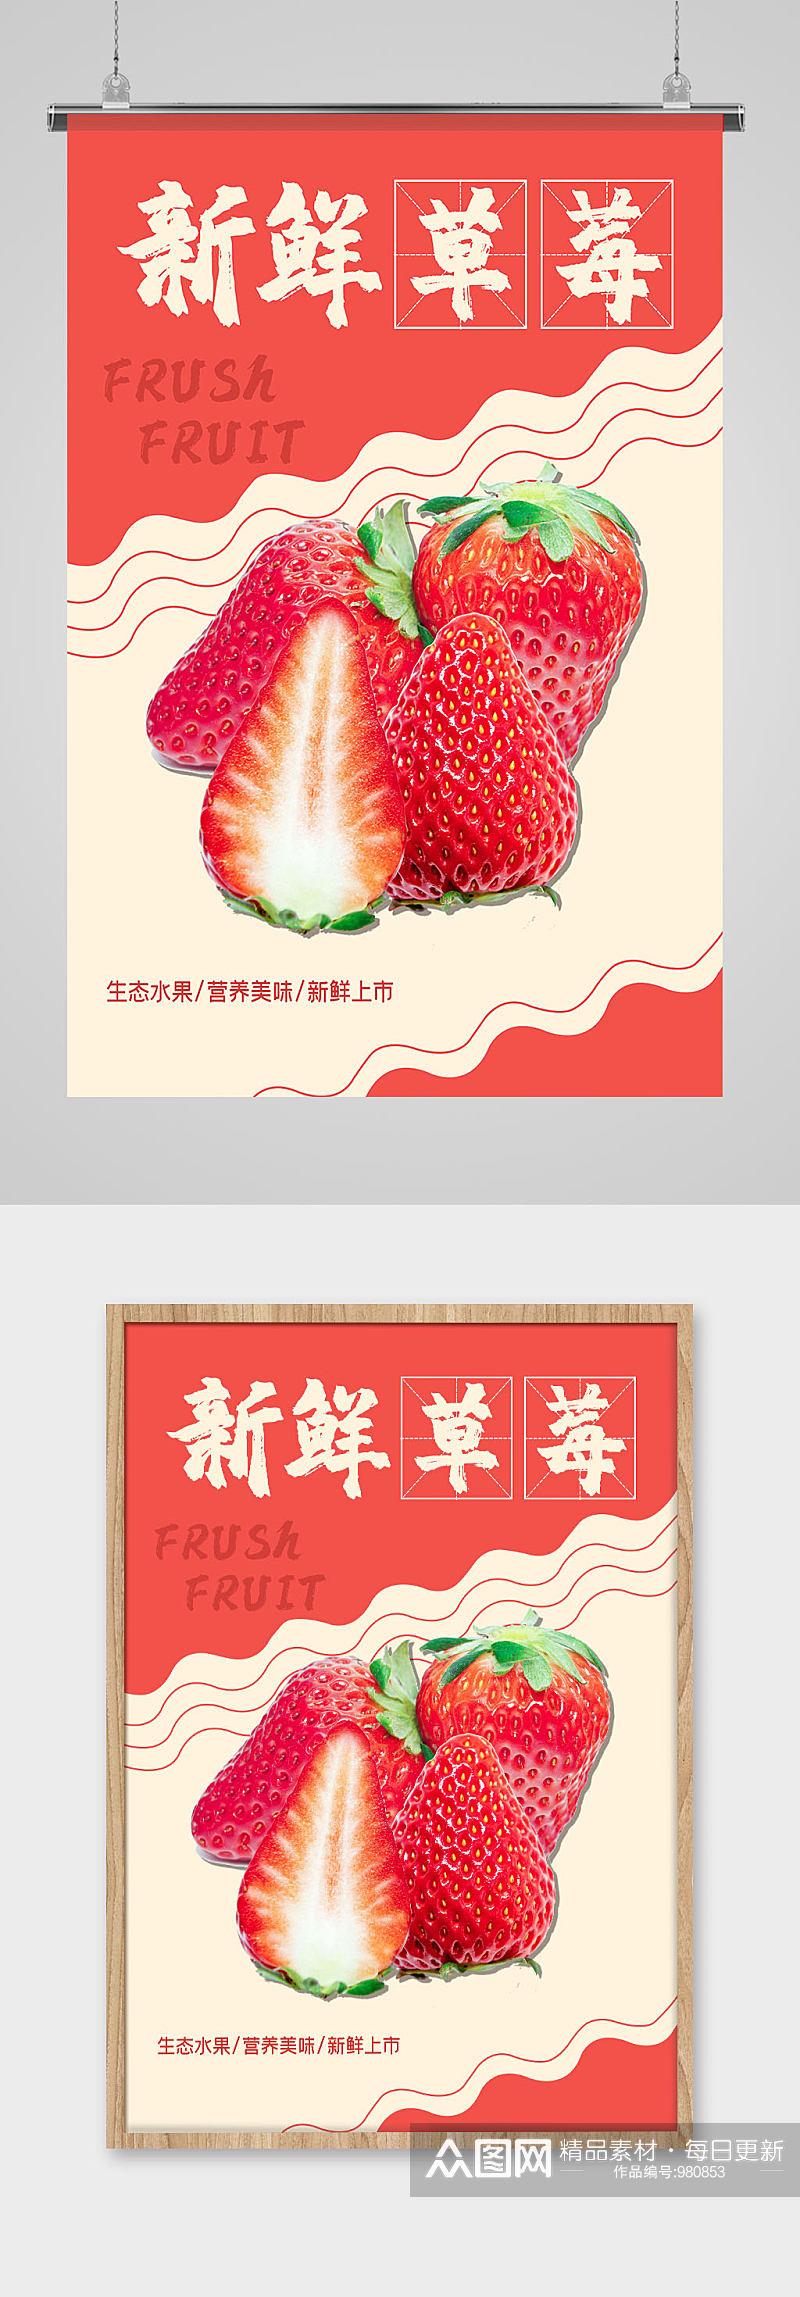 新鲜草莓水果超市海报素材